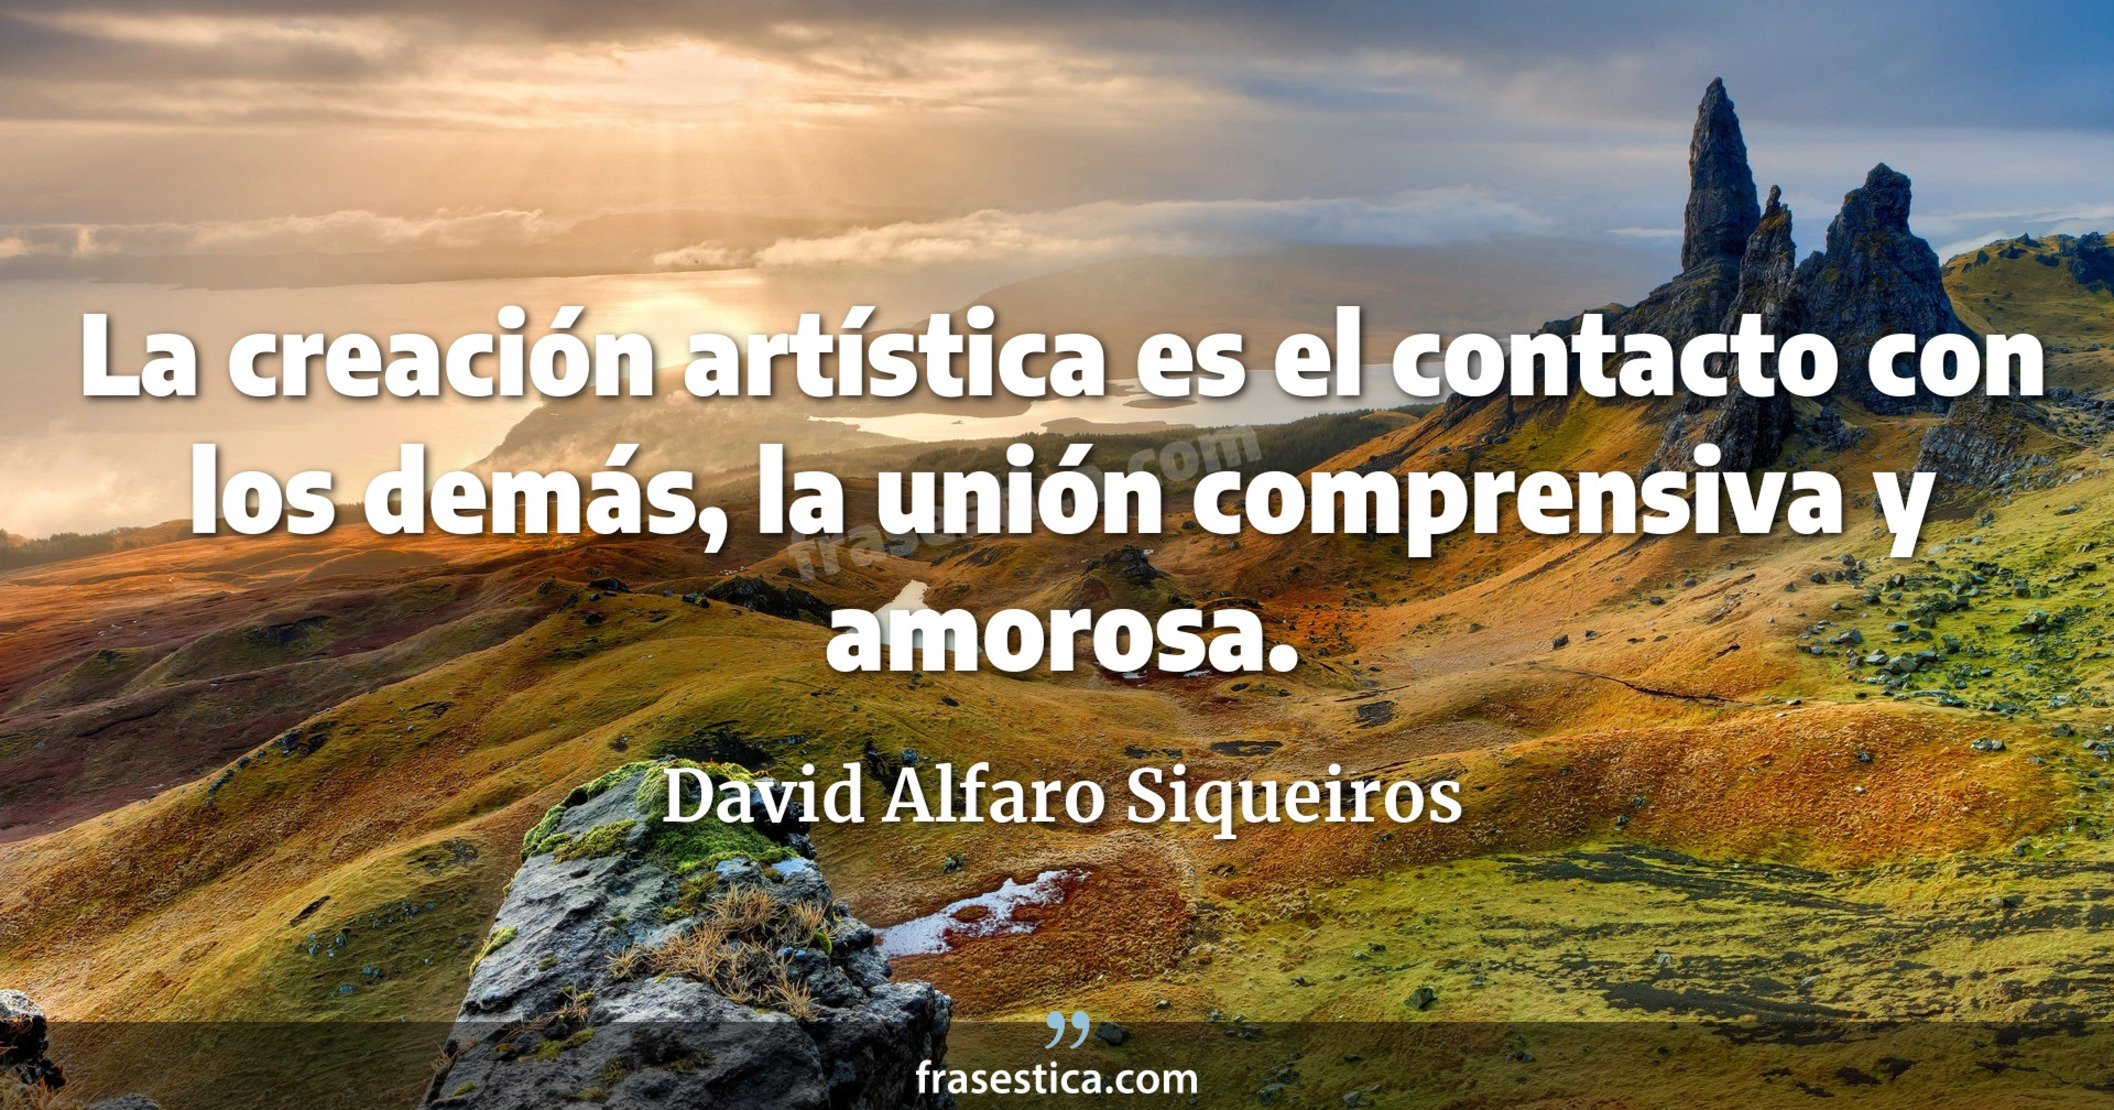 La creación artística es el contacto con los demás, la unión comprensiva y amorosa. - David Alfaro Siqueiros